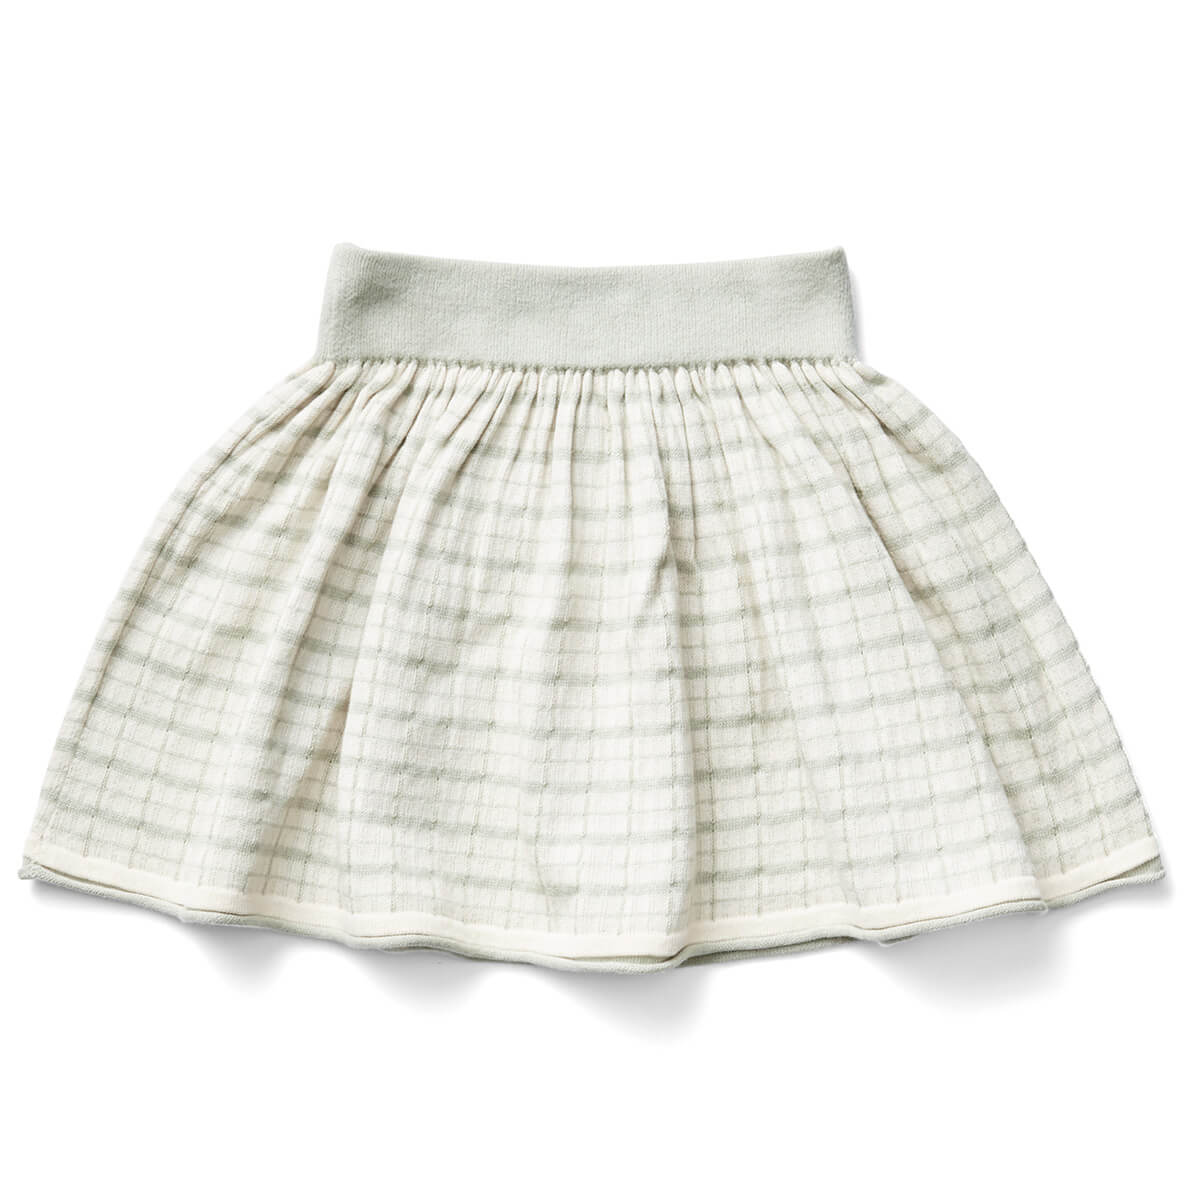 Netty Skirt in Moonstone by Soor Ploom - Last Ones In Stock - 8-12 